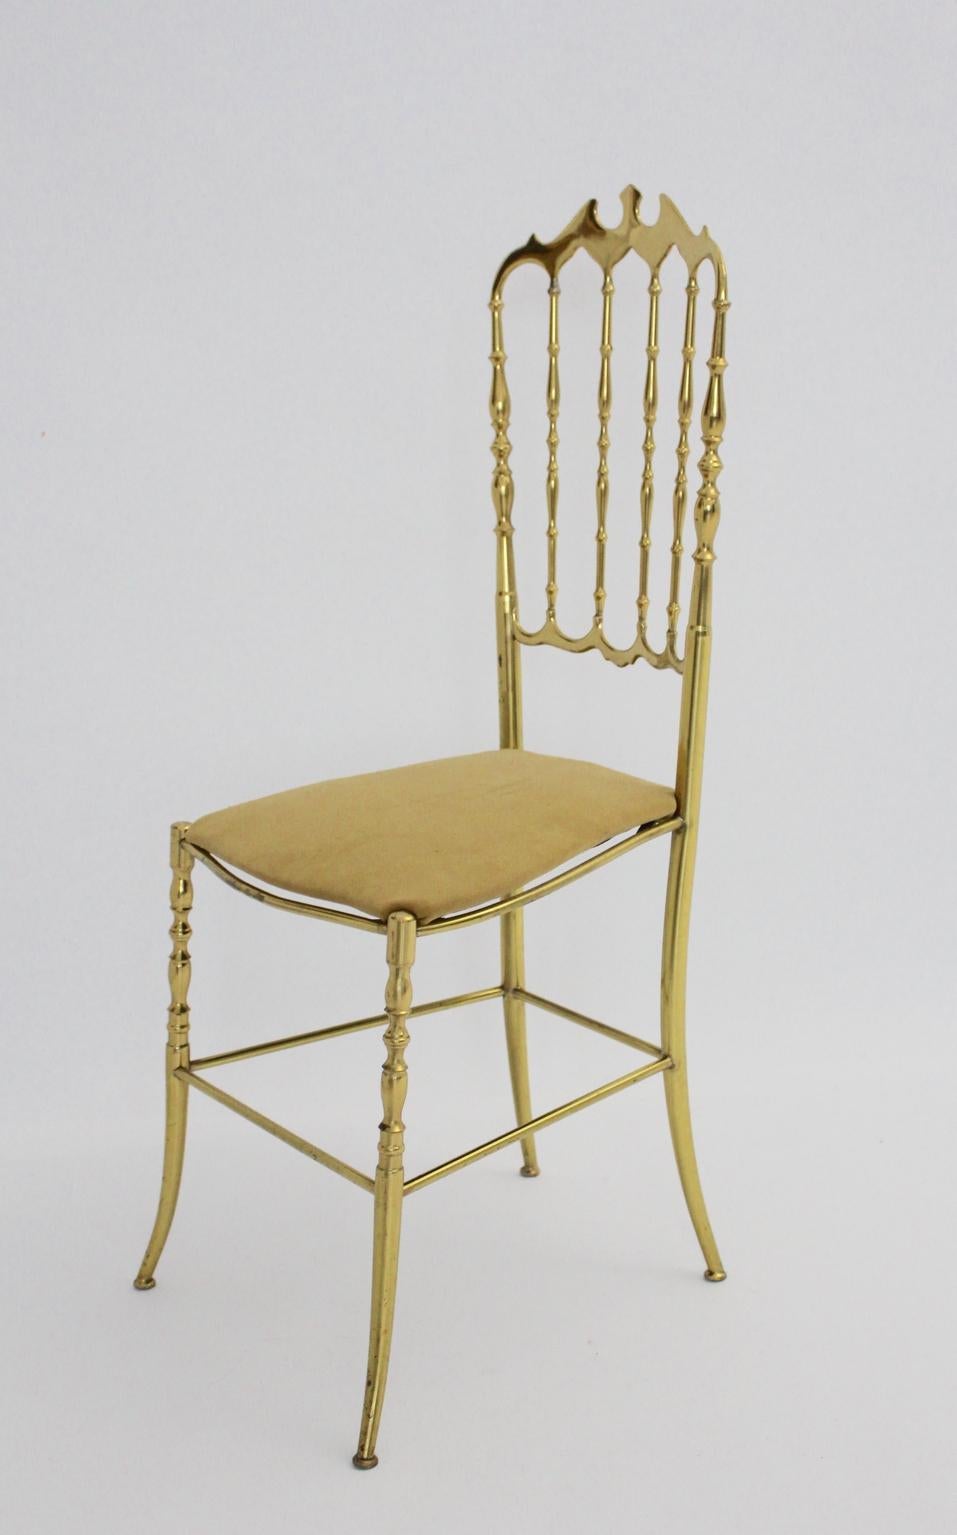 Mid Century Modern Vintage schöner Chiavari Stuhl oder Beistellstuhl aus Messing mit einem neu bezogenen hellbraunen Samtstoffsitz.
Der Zustand ist sehr gut mit geringen Alters- und Gebrauchsspuren und zeigt eine tolle Messingpatina.
alle Maße sind